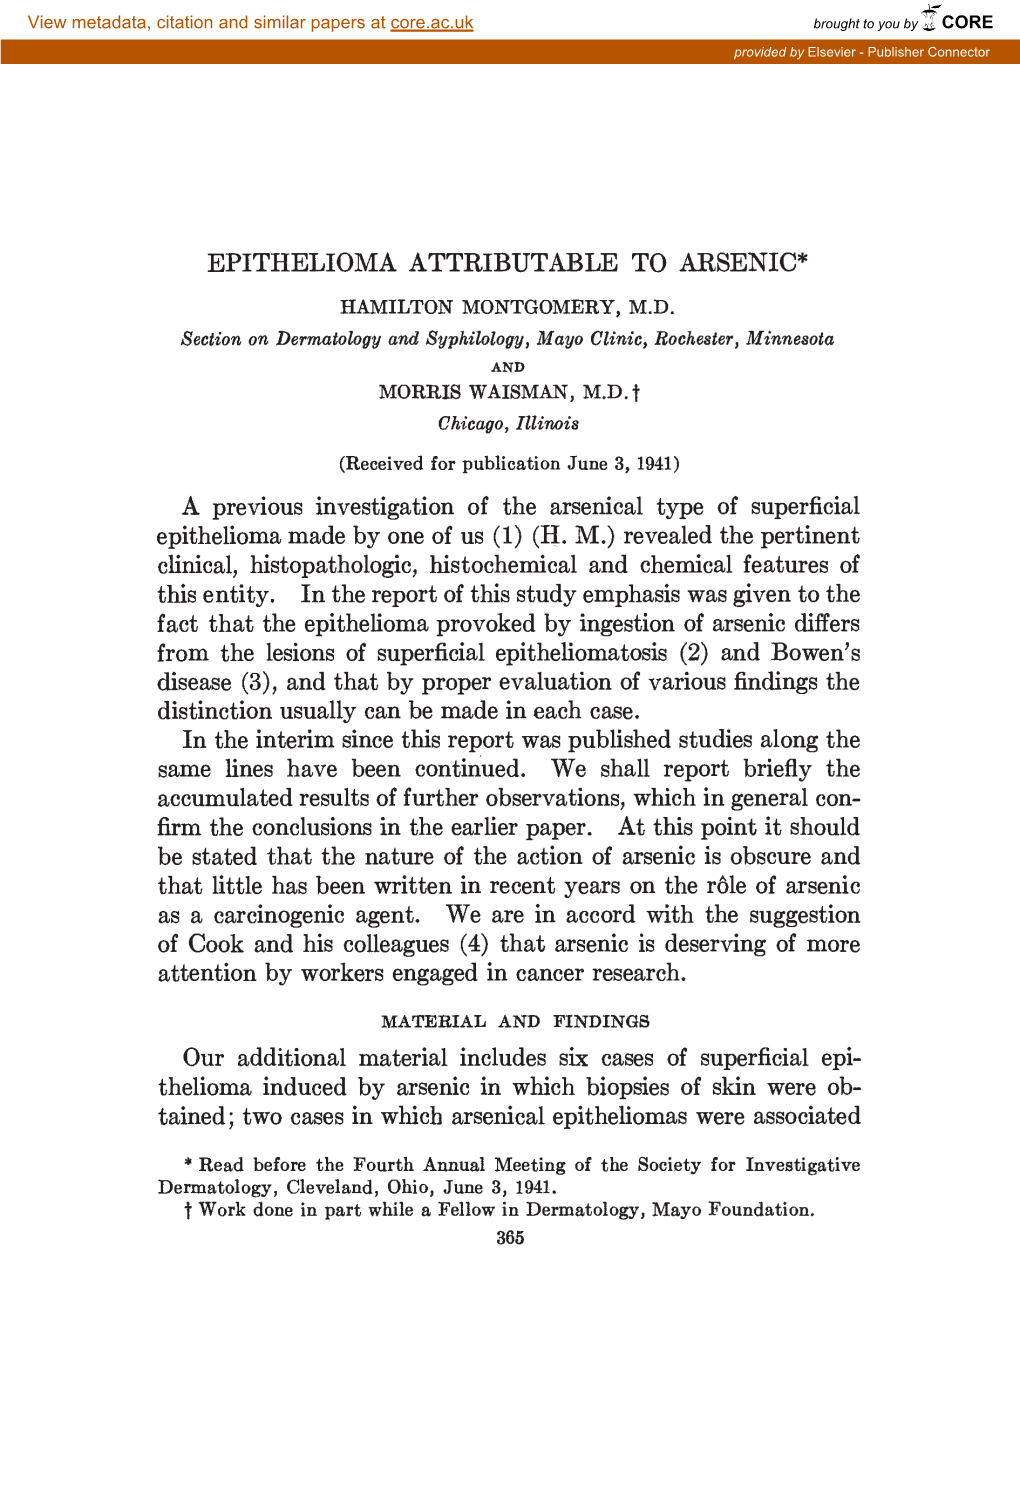 Epithelioma Attributable to Arsenic* Hamilton Montgomery, M.D